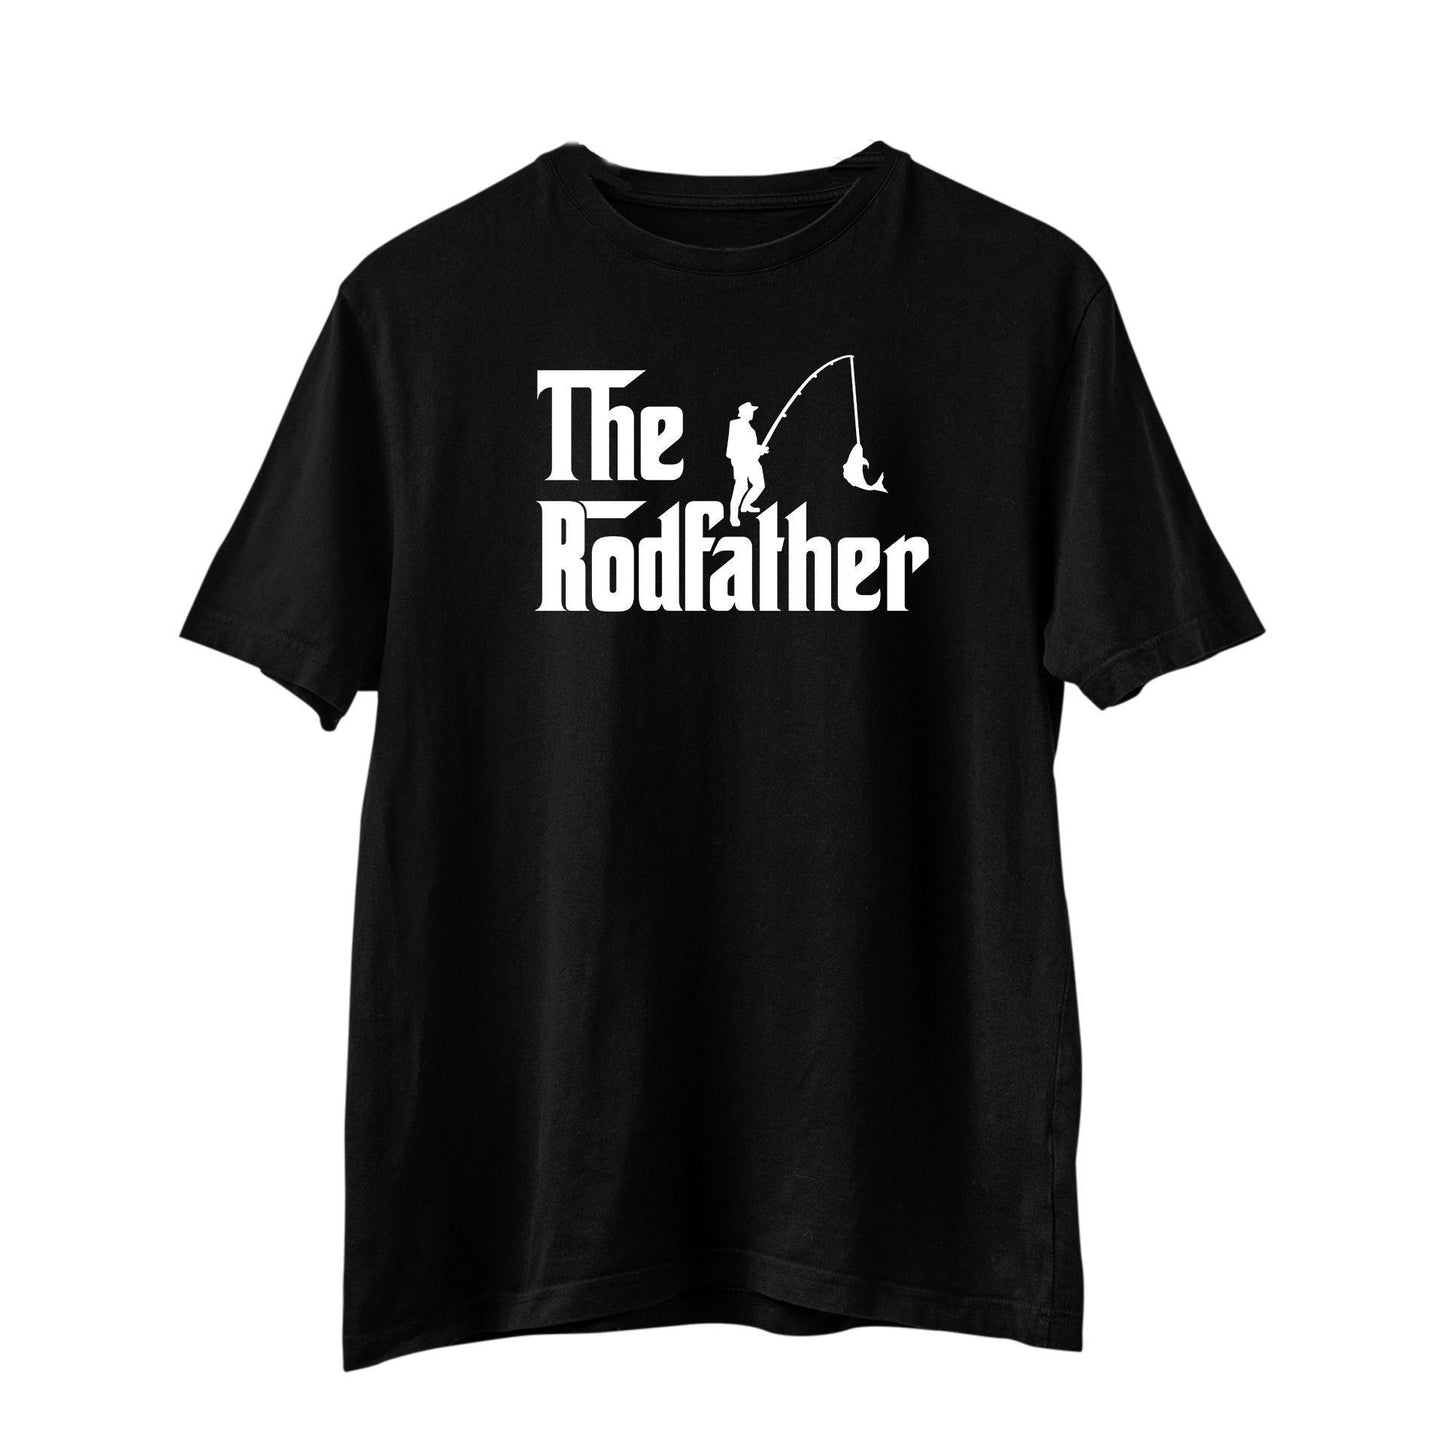 The Rodfather T-Shirt, Fishing T Shirt, Fisherman Shirt, Funny